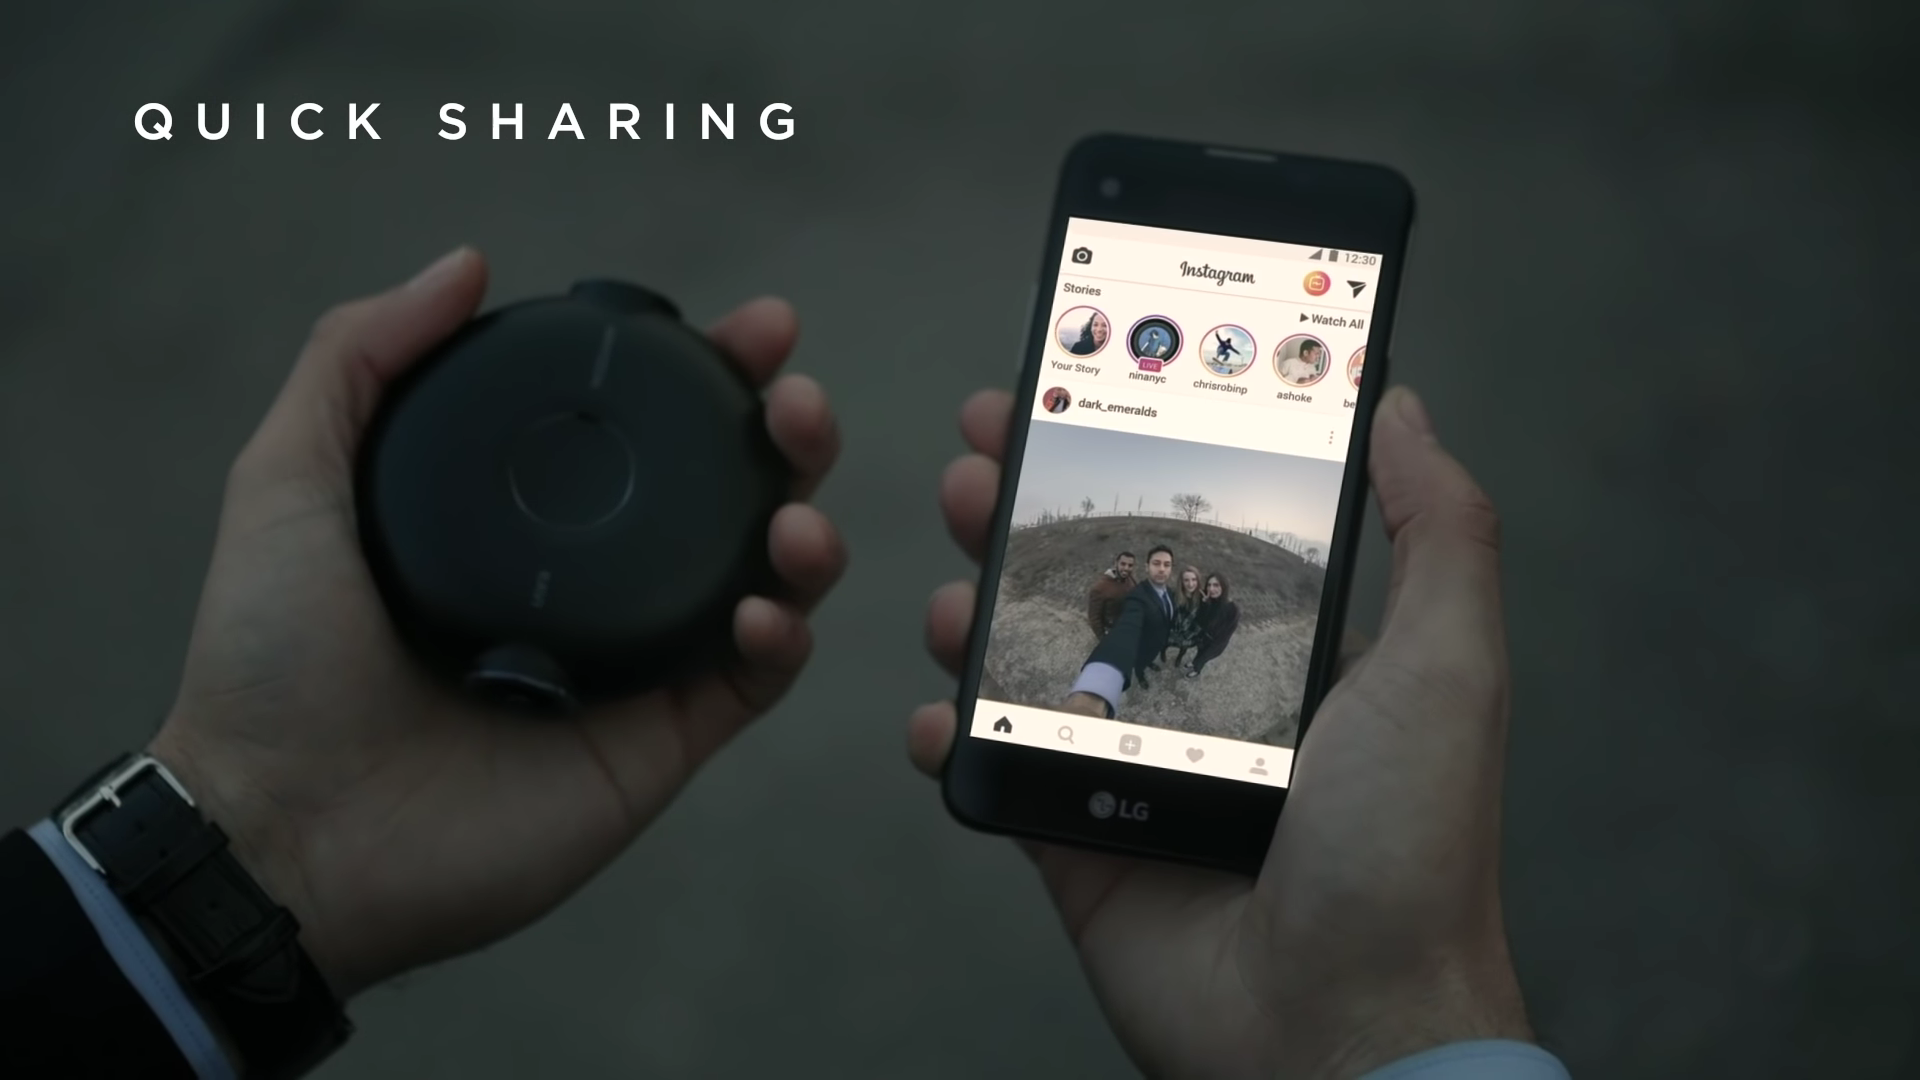 The Vezo 360  Revolutionary Dash Cam with Parking Mode